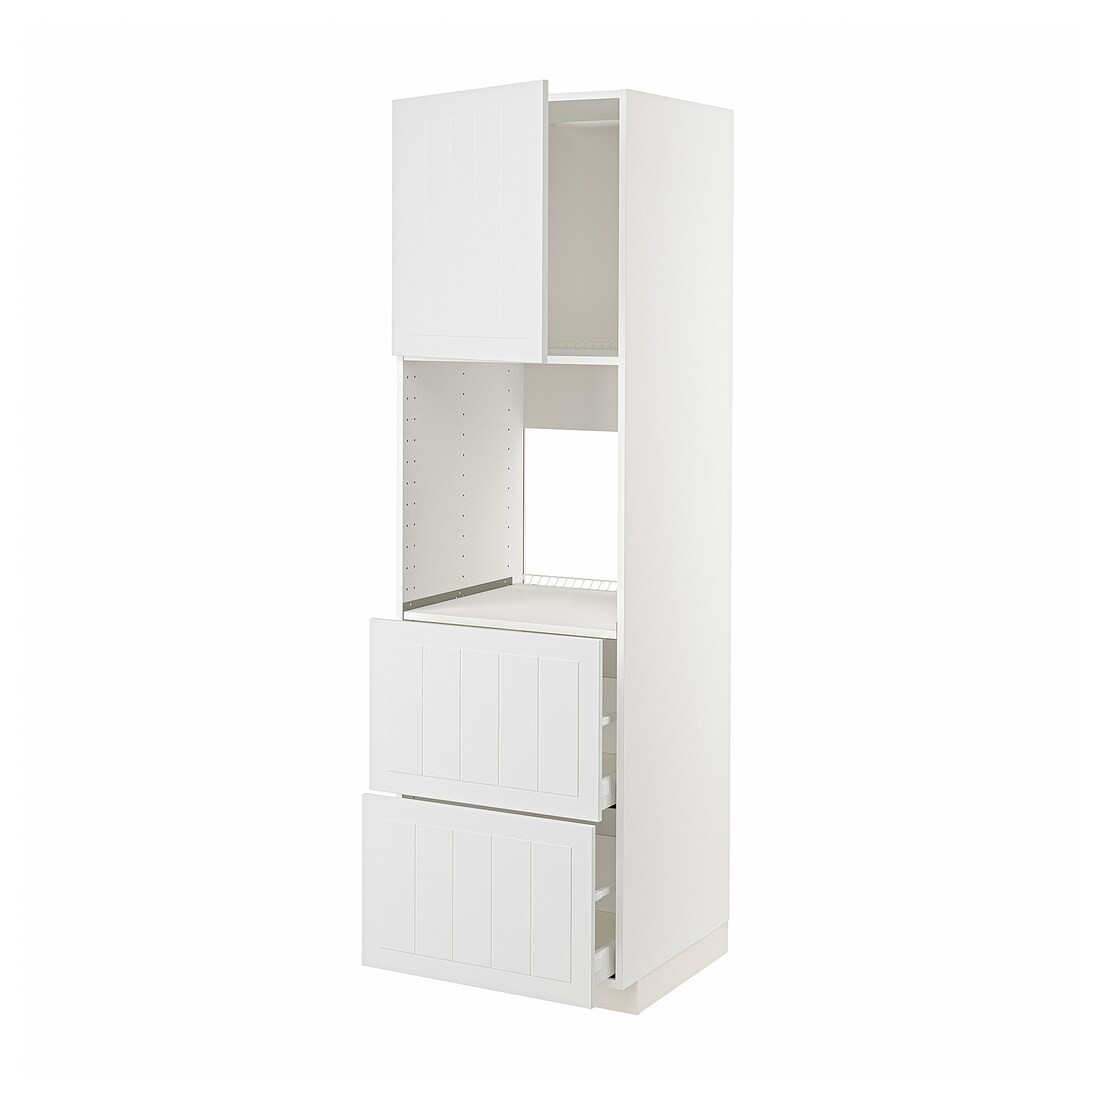 METOD МЕТОД / MAXIMERA МАКСИМЕРА Высокий шкаф для духовки с дверцей / ящиками, белый / Stensund белый, 60x60x200 см